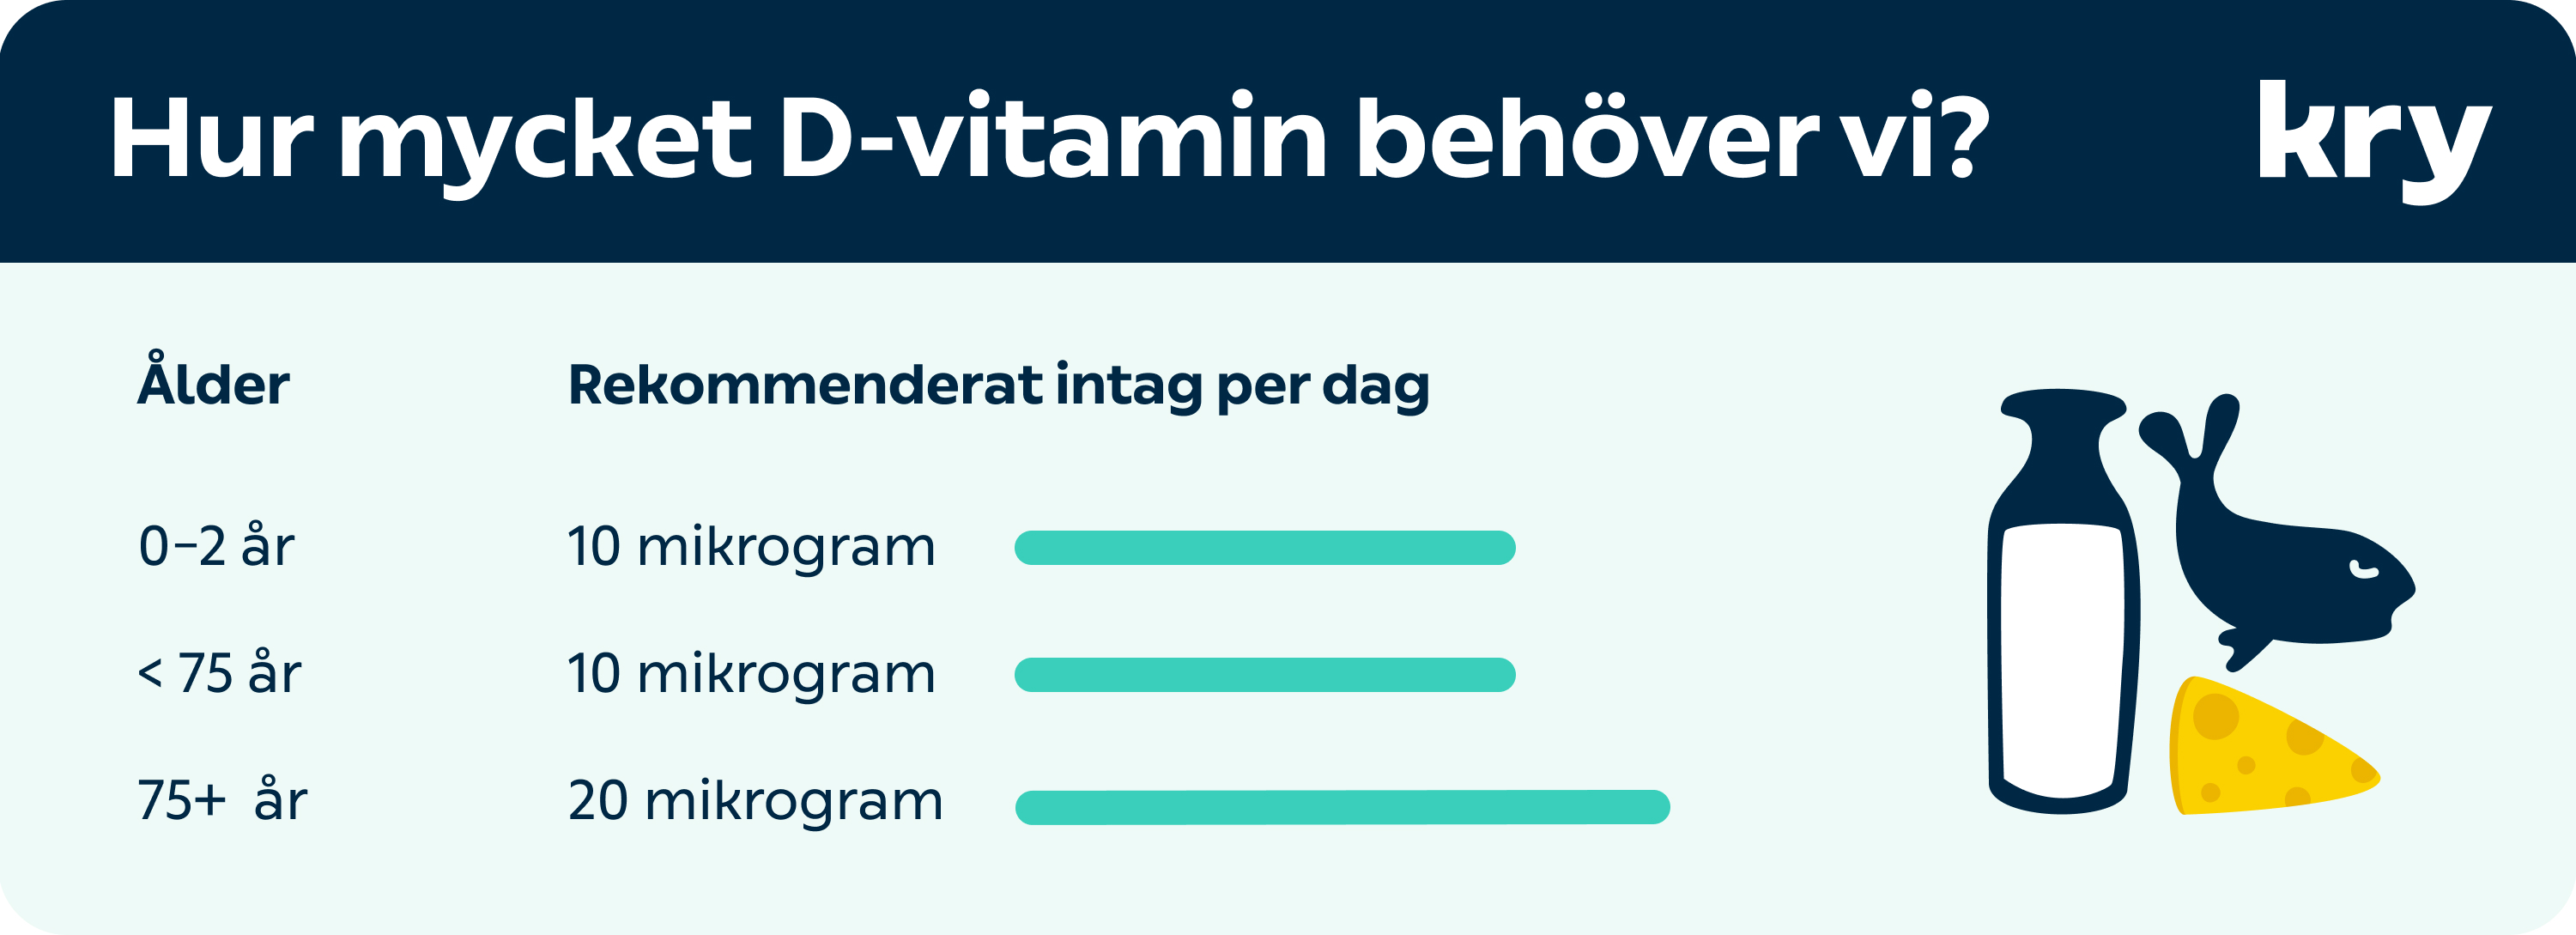 kry.se > Din hälsa > Image > D-vitamin